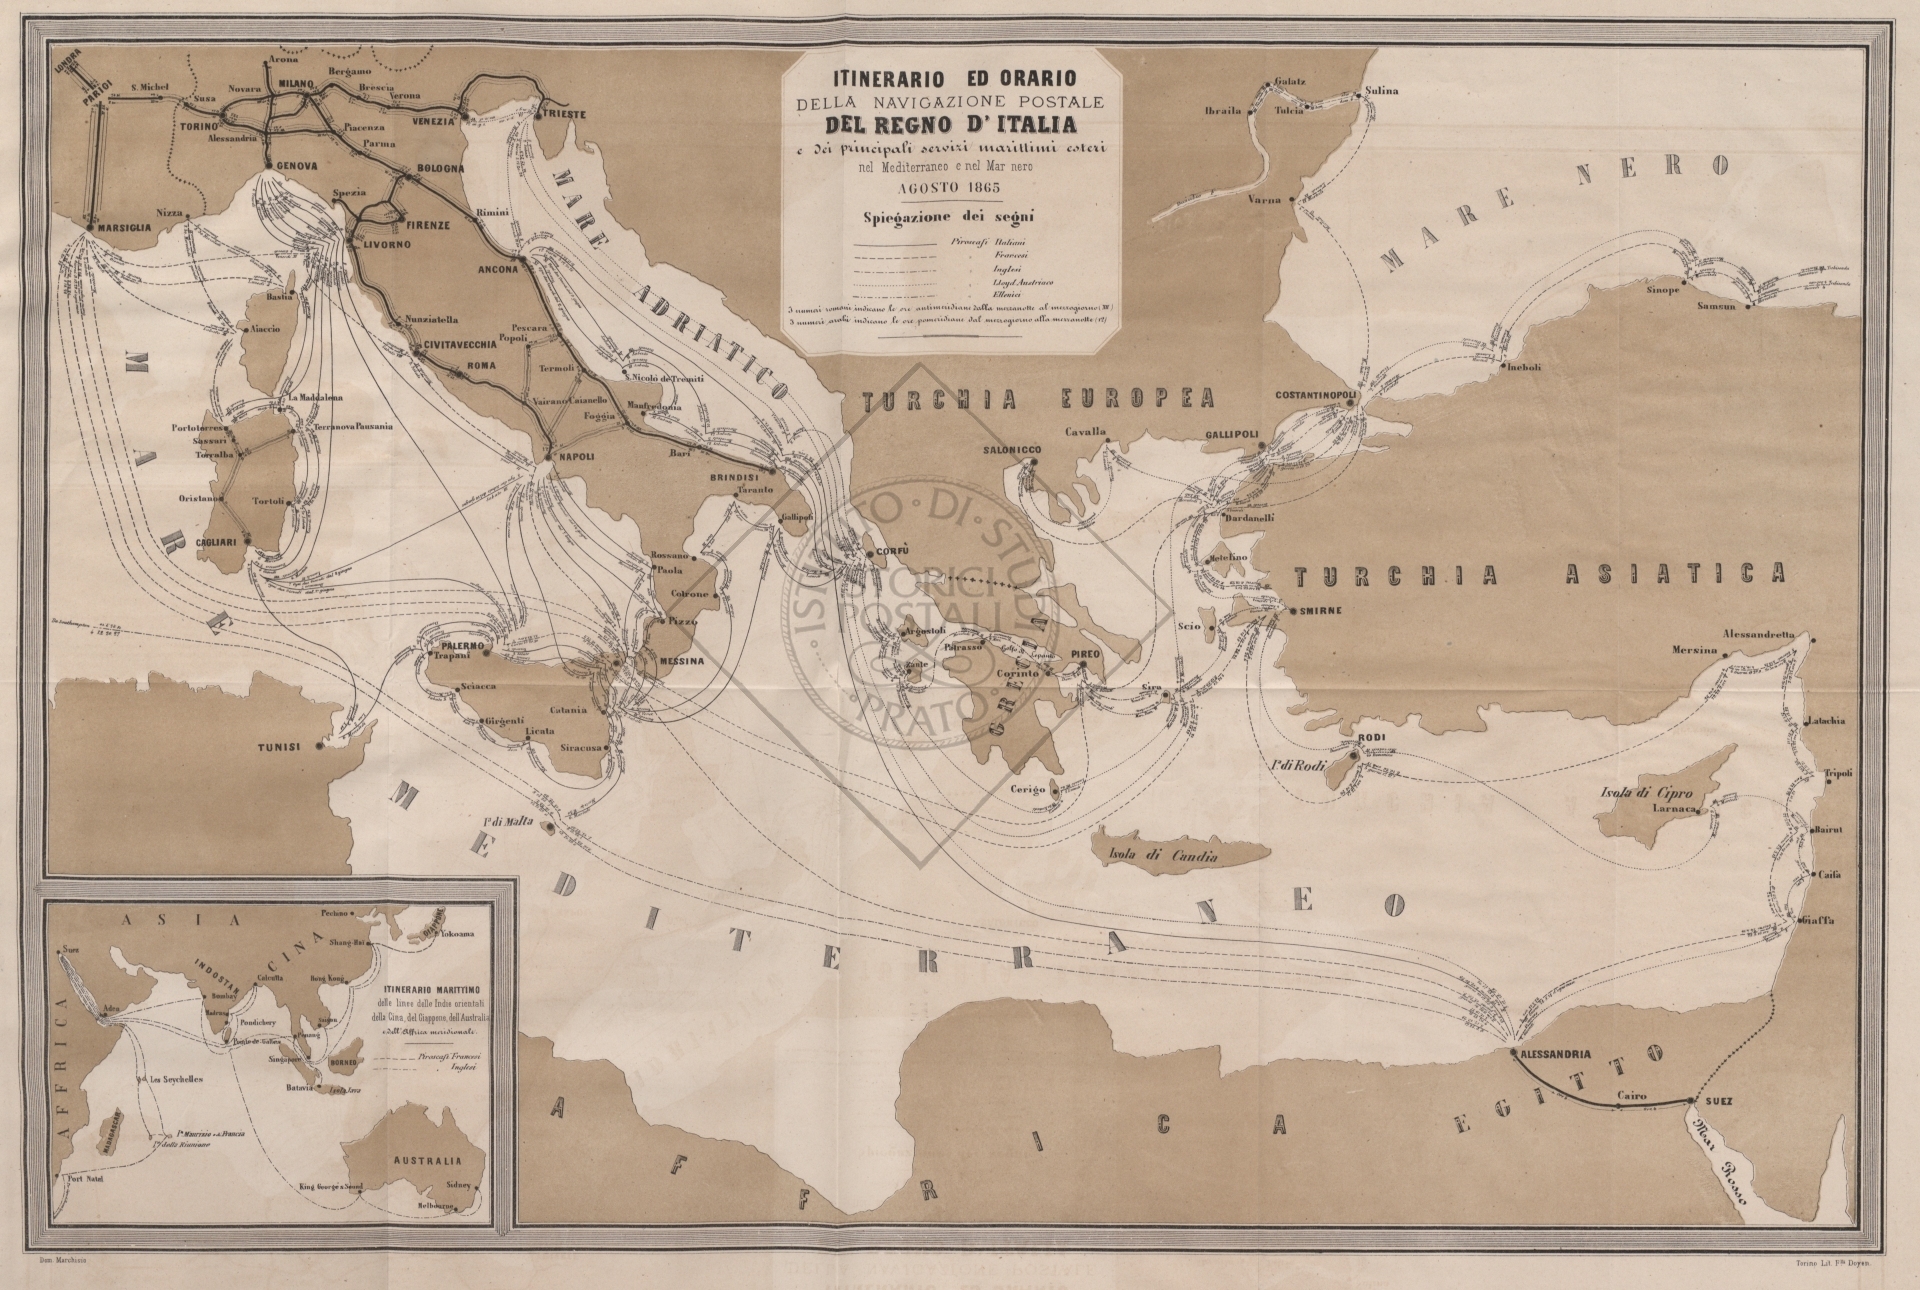 Itinerario ed orario della navigazione postale del regno d'Italia (dalla relazione del 1864)